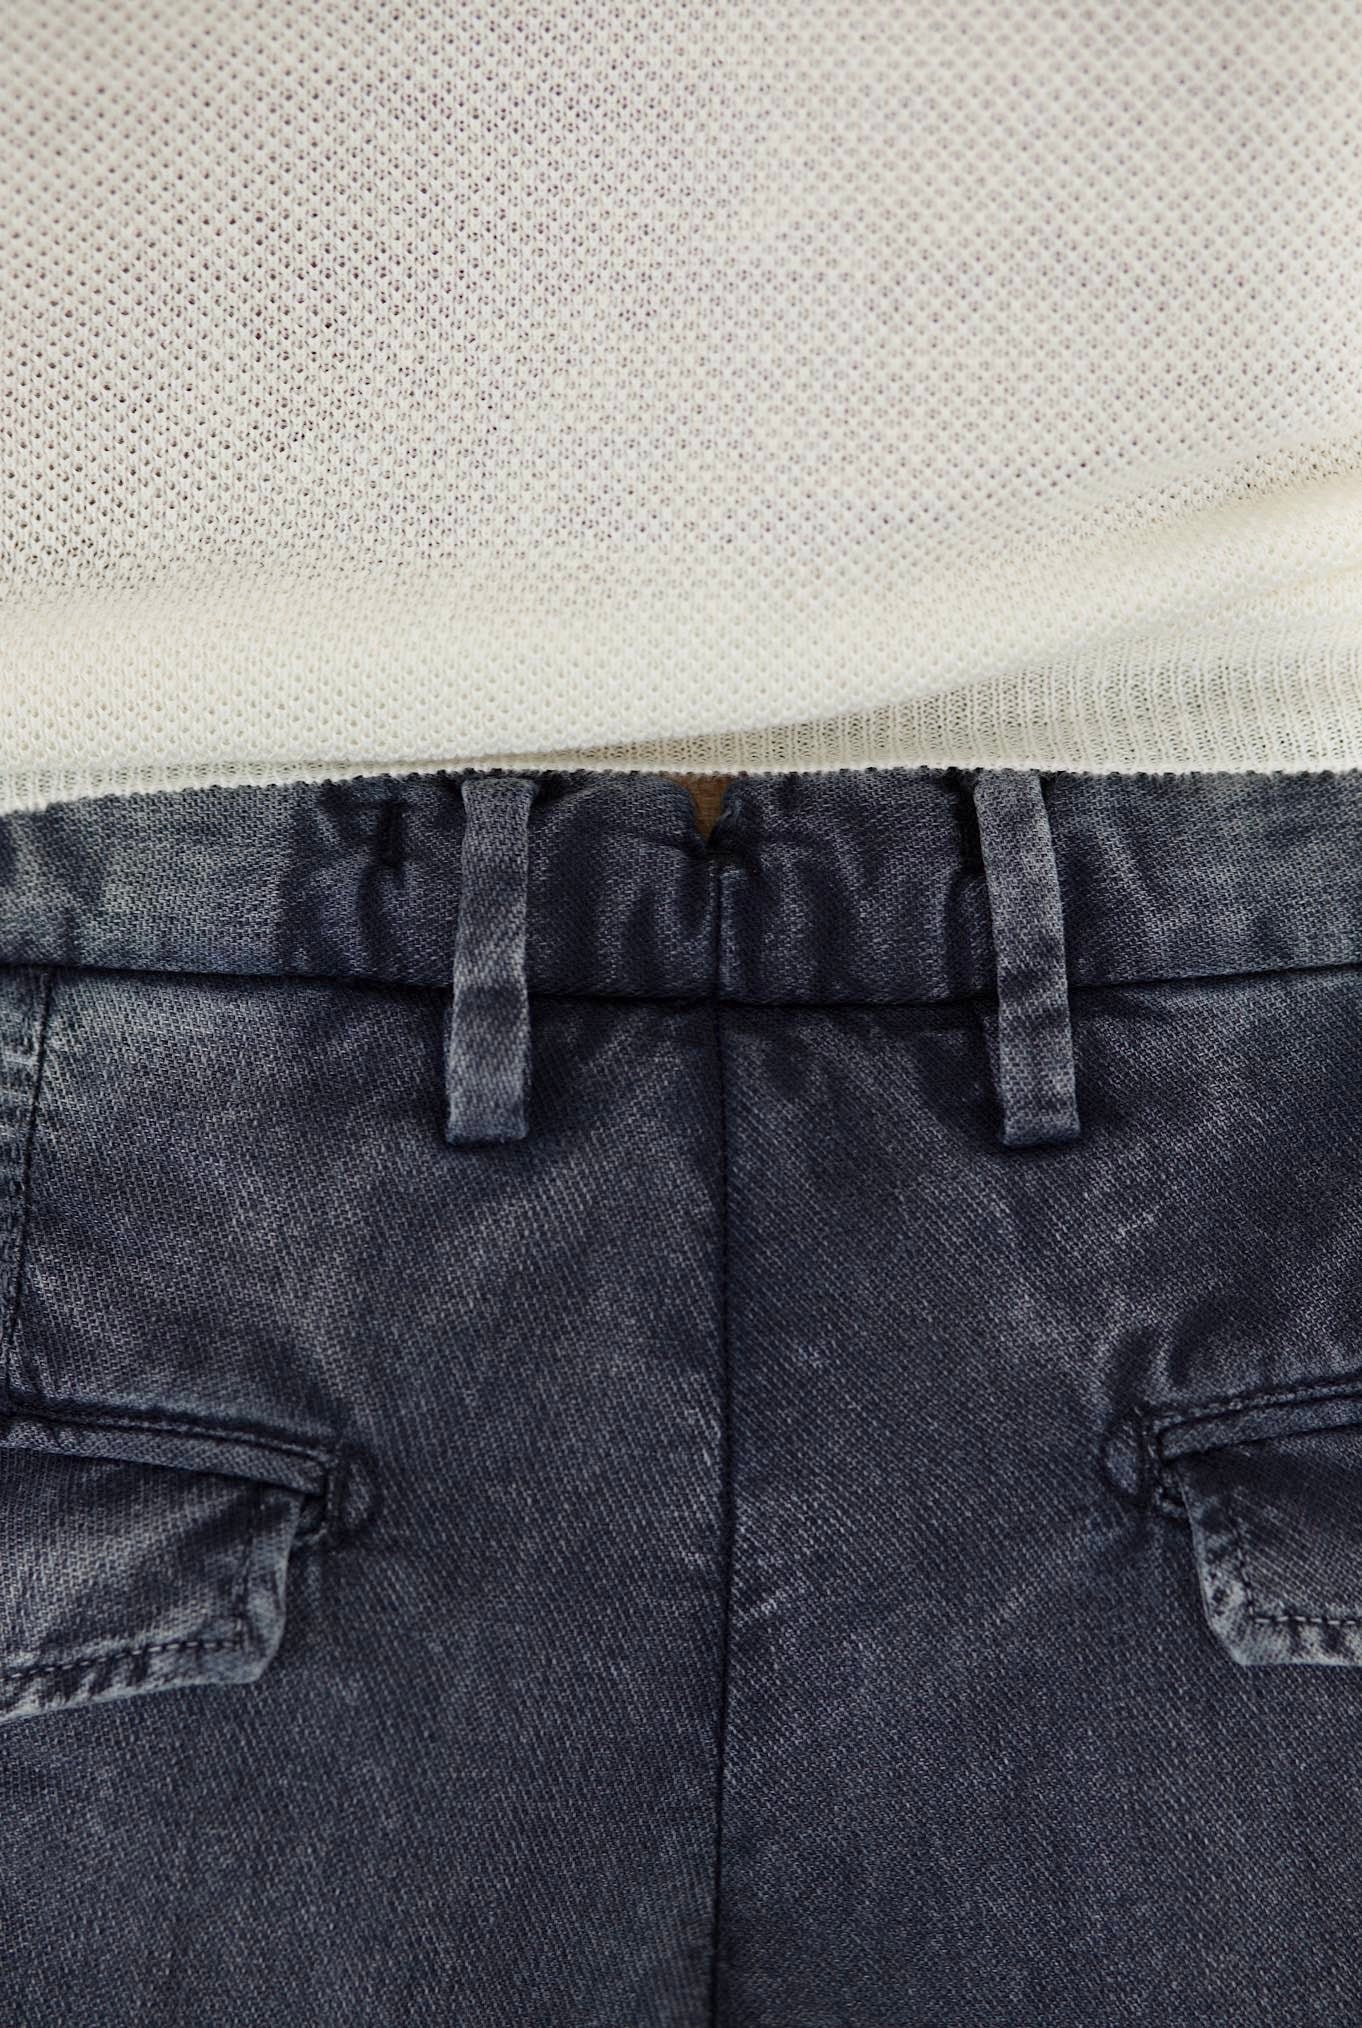 MYTHS Pantaloni Washed Cotone Lino Blu